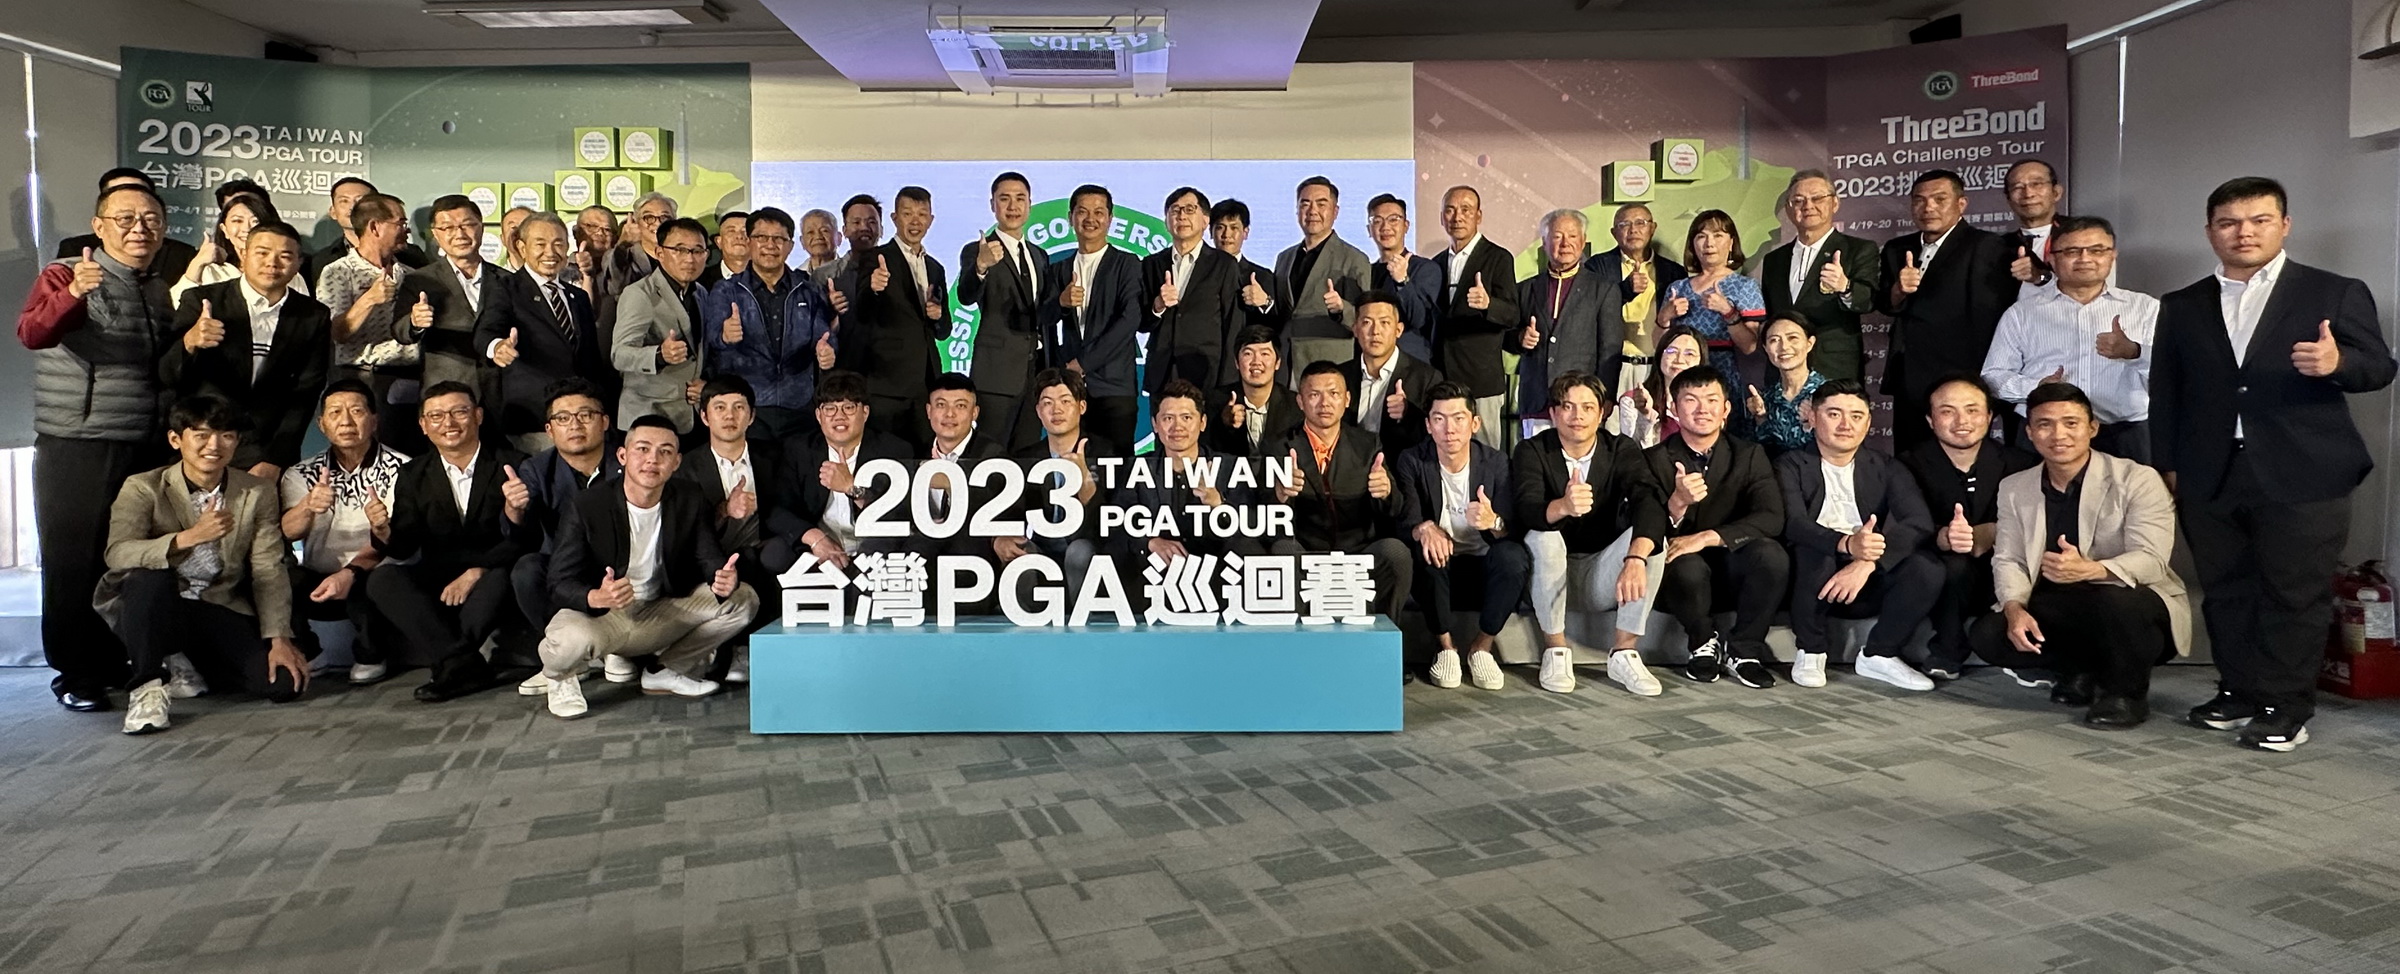 2023台灣PGA巡迴賽記者會大合照。鍾豐榮攝影